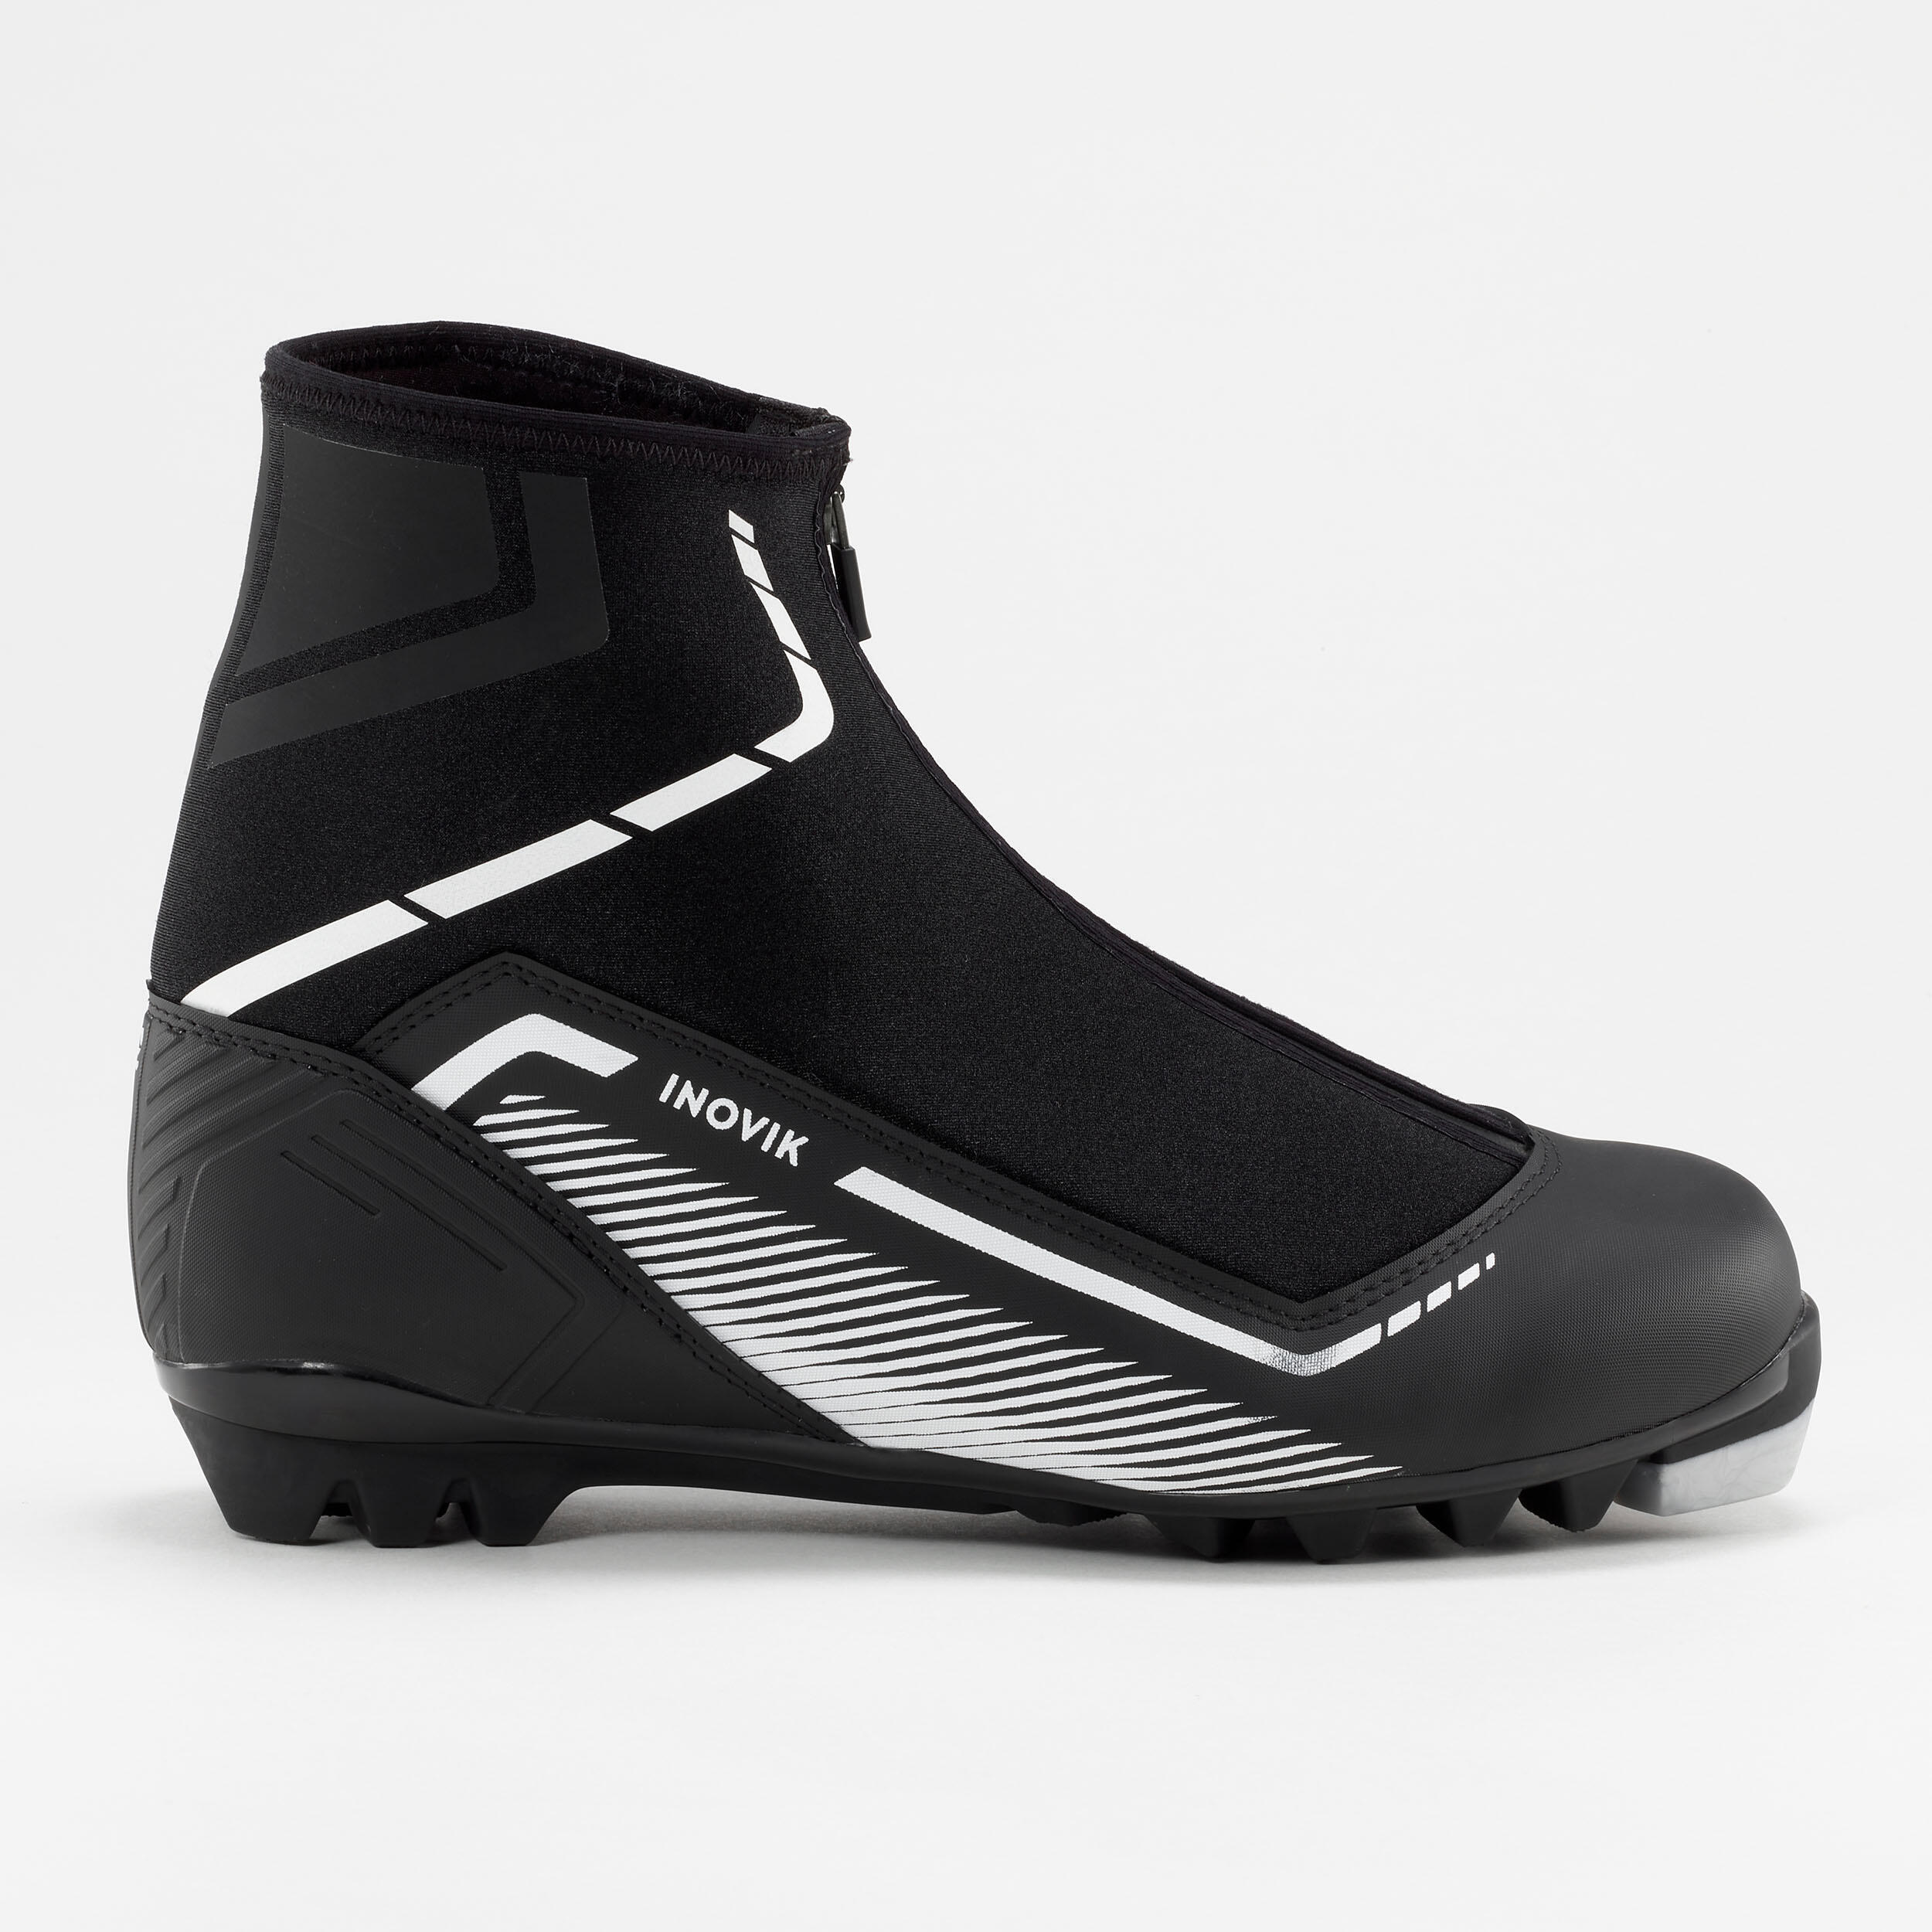 Лыжные ботинки Decathlon Inovik XC S150, черный elvio zanon обувь на шнурках